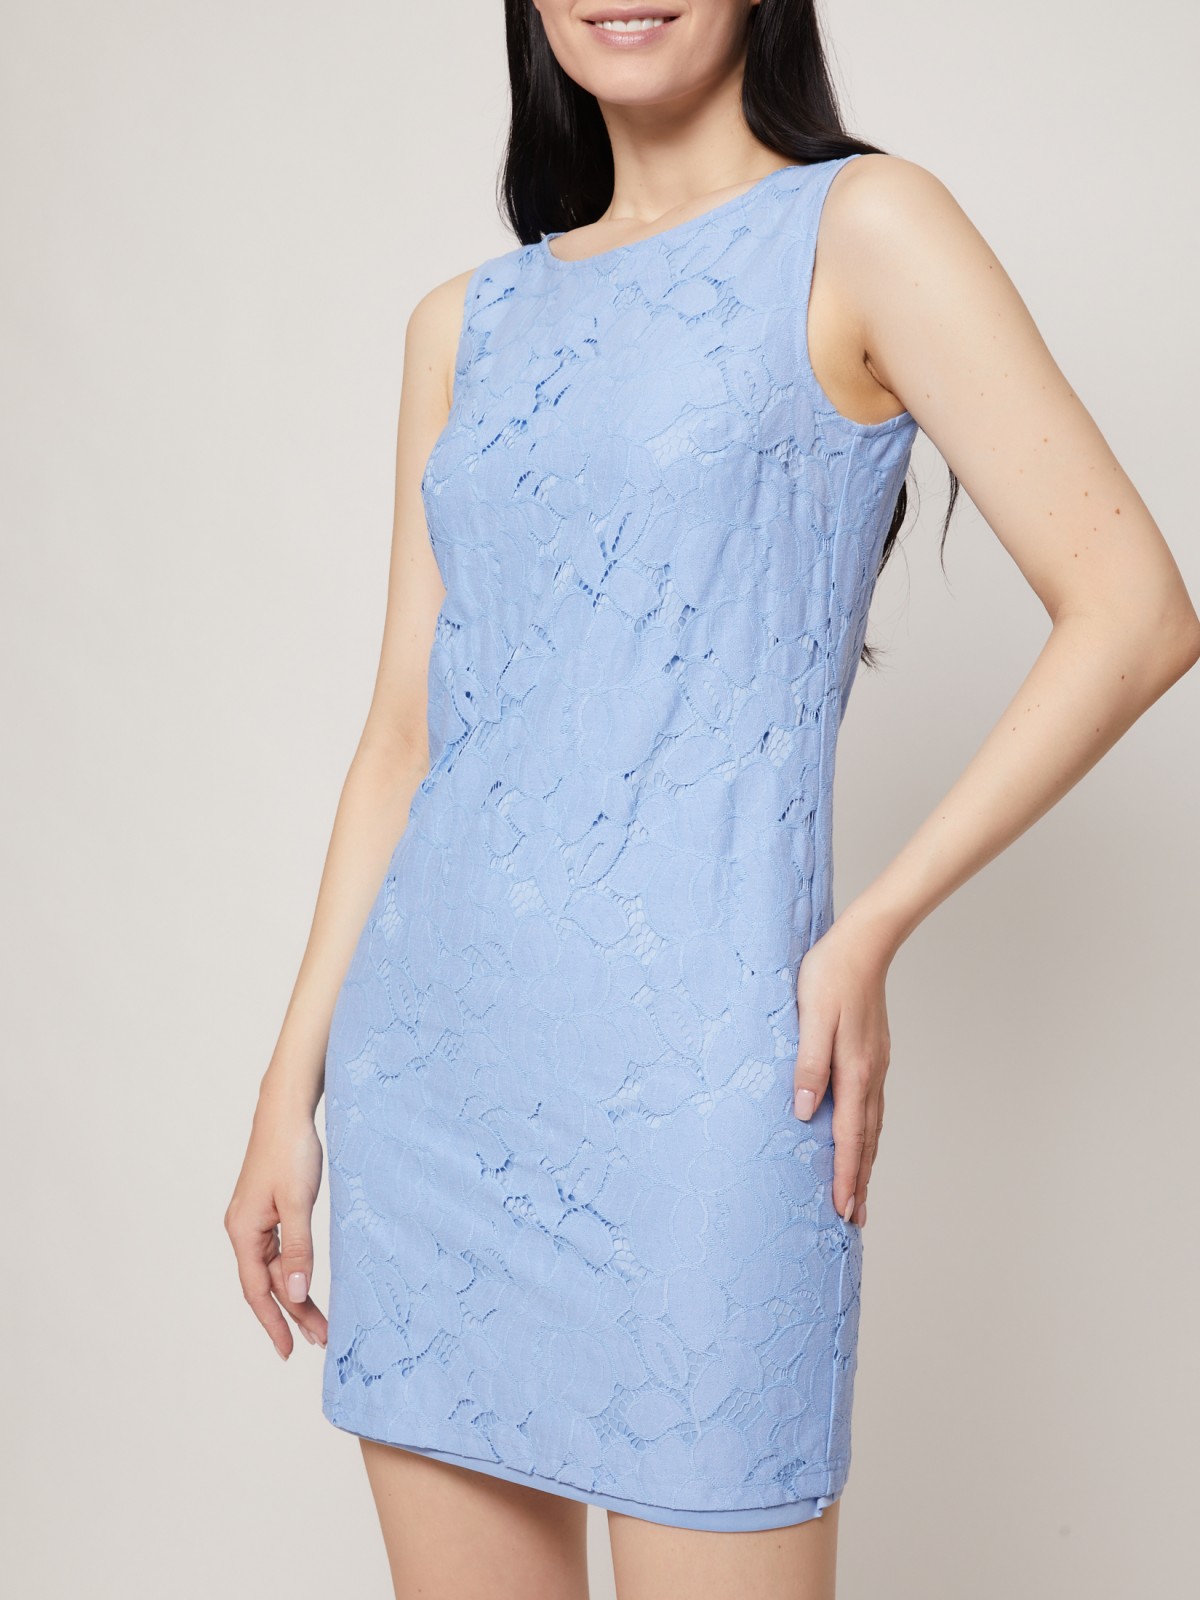 Кружевное платье мини zolla 02126829F262, цвет светло-голубой, размер XS - фото 3